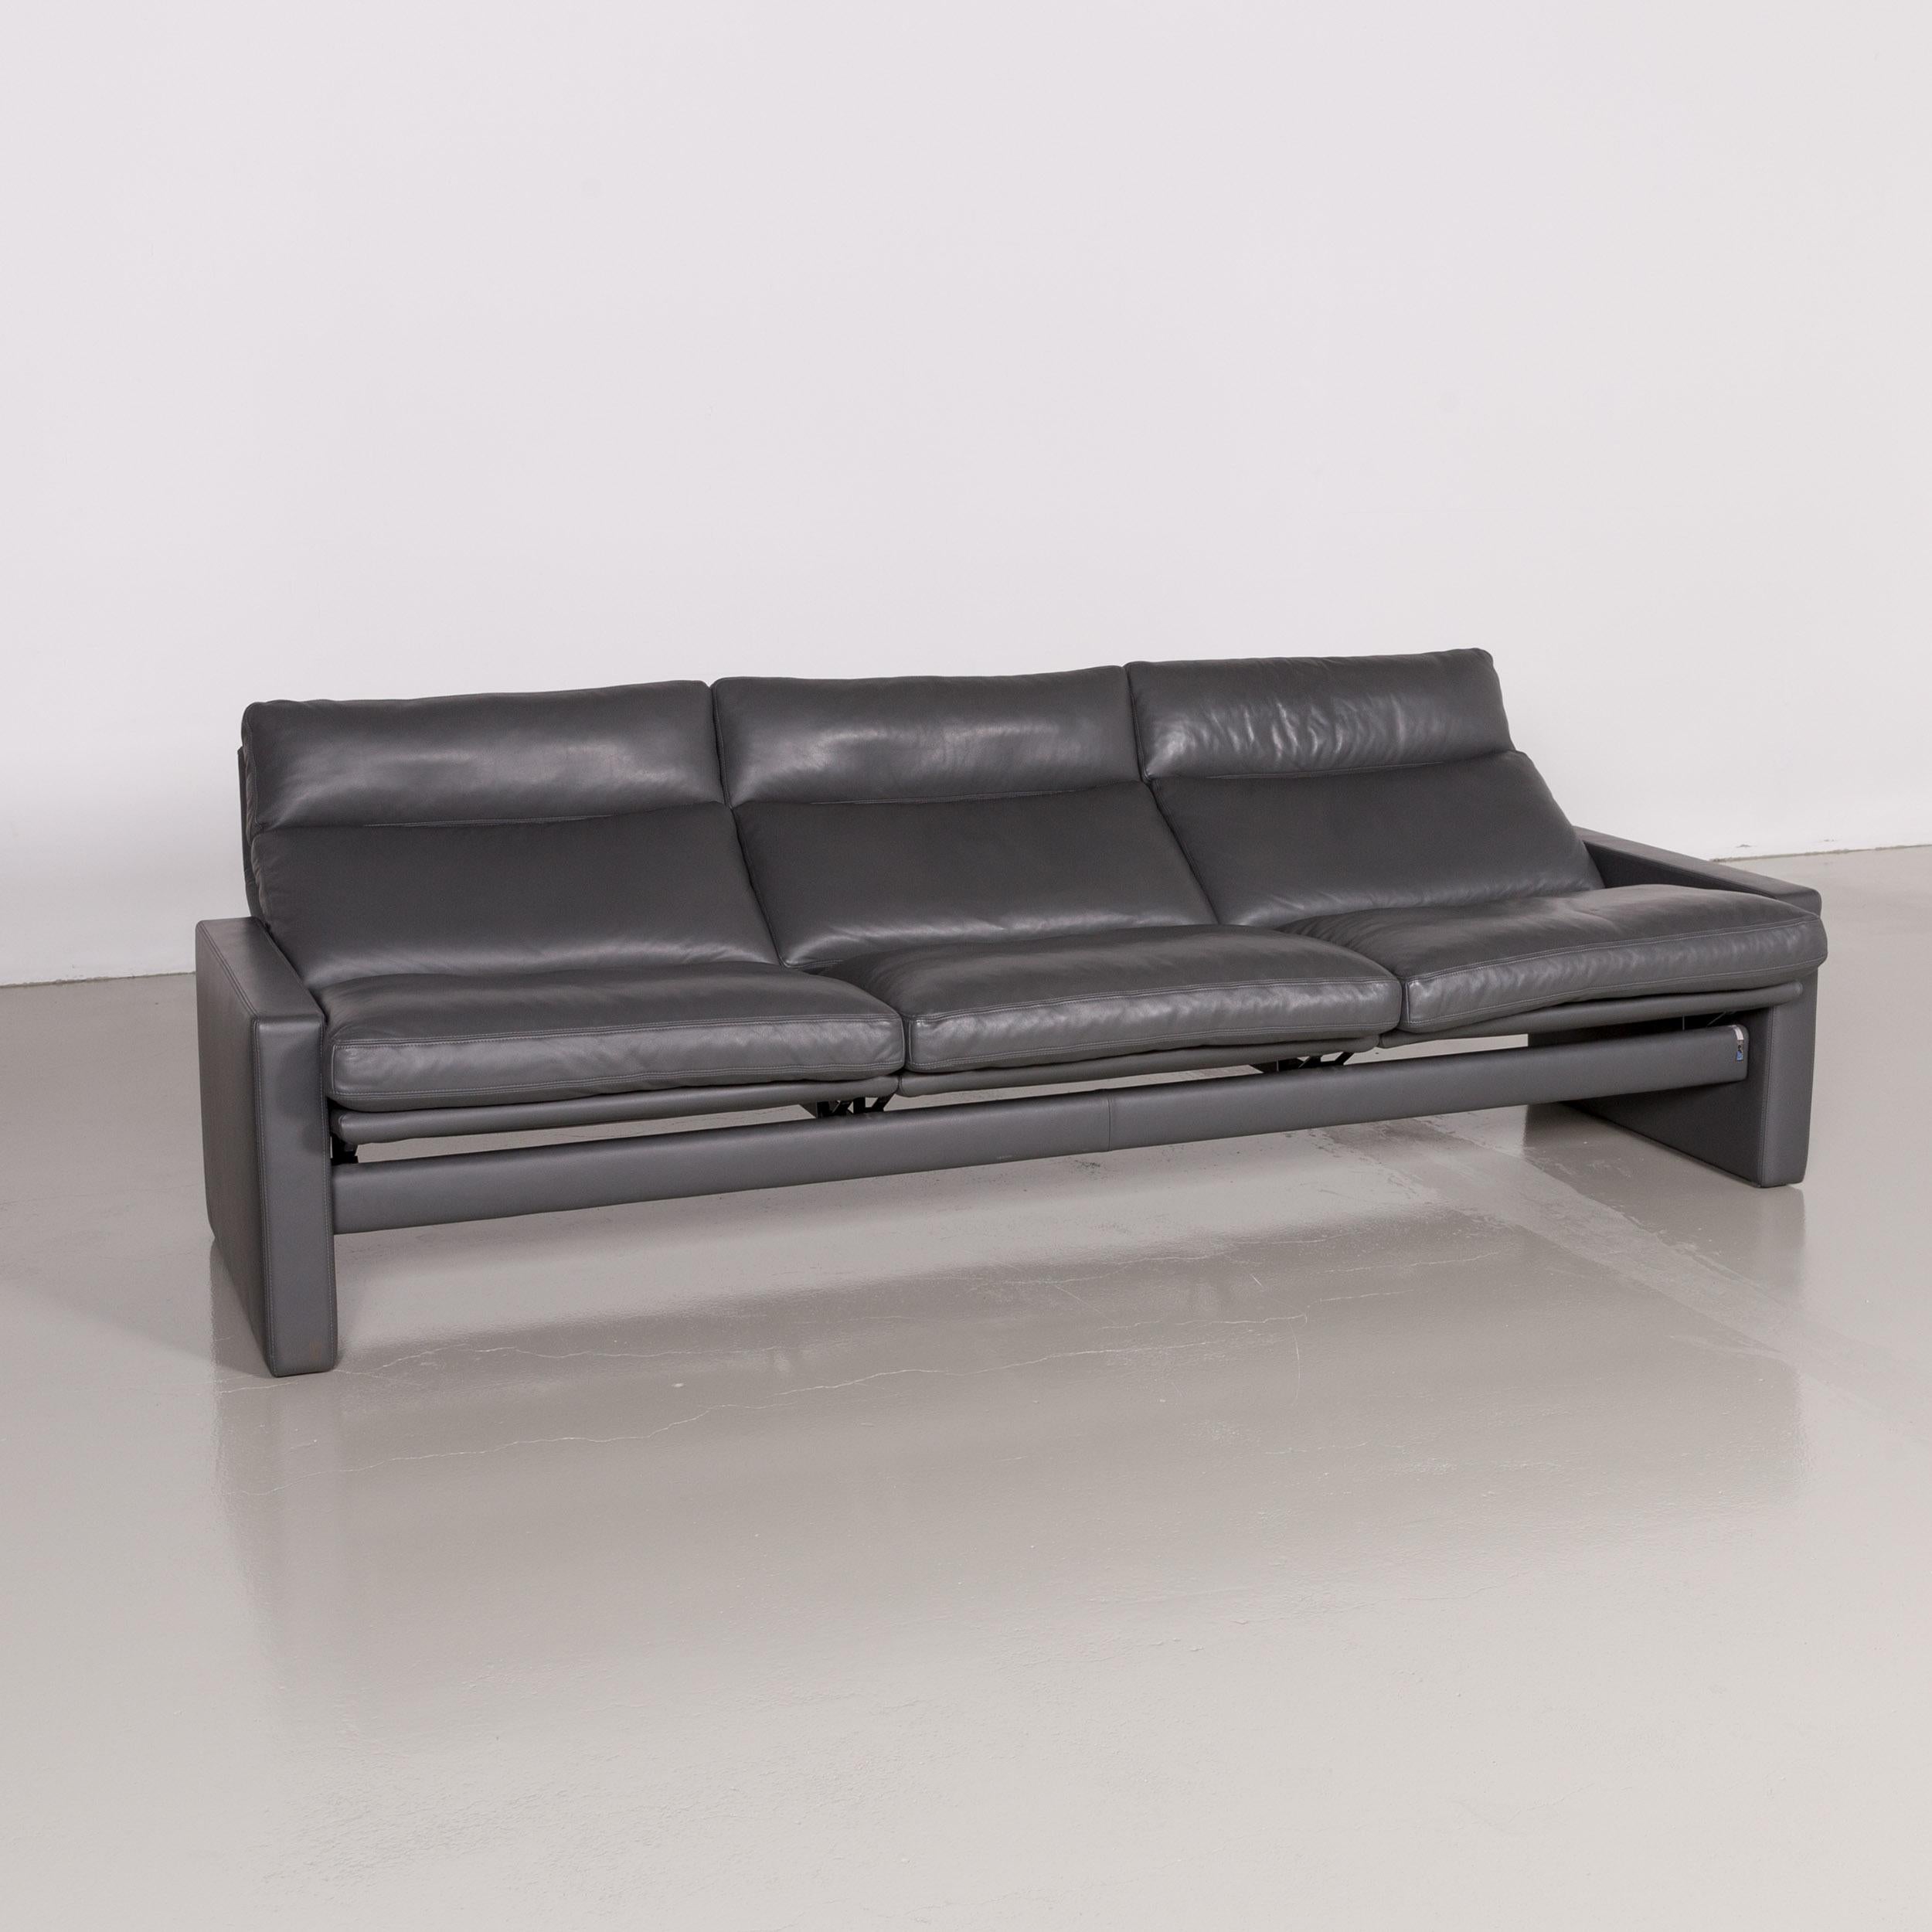 Modern Erpo Manhattan Designer Leather Sofa in Anthracite Grey Three-Seat Couch